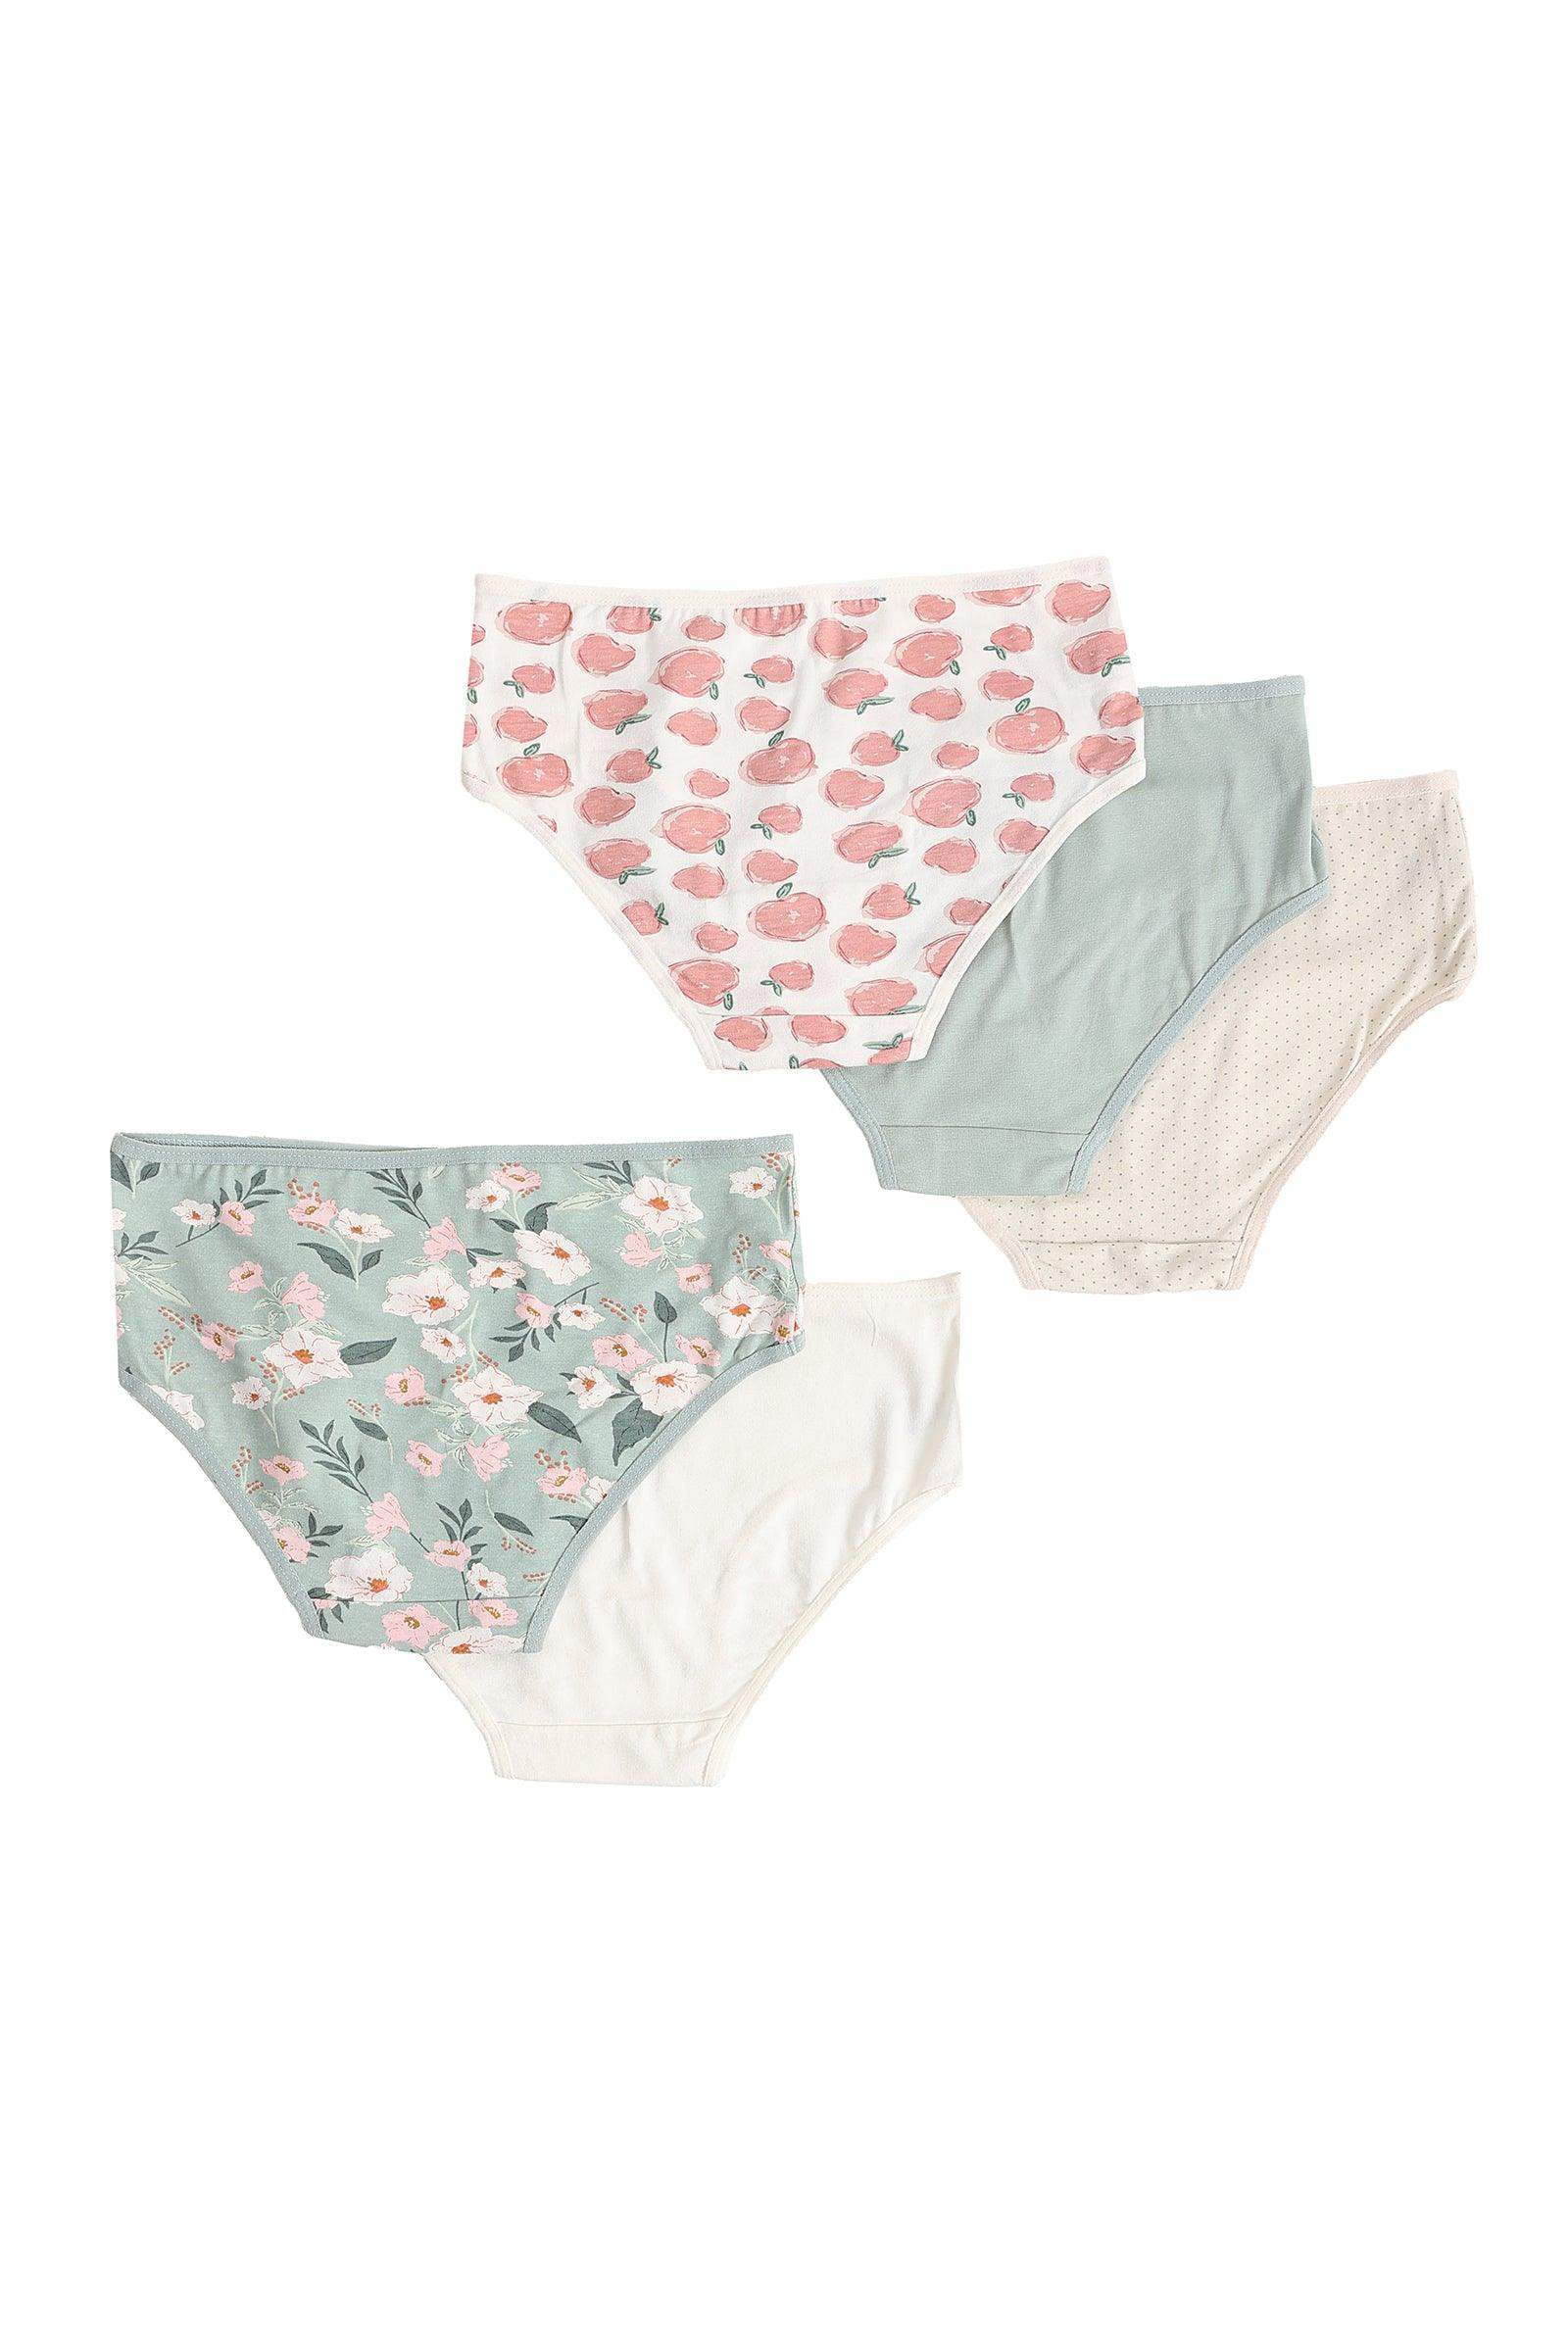 Pack of 5 Colored Brief Panties